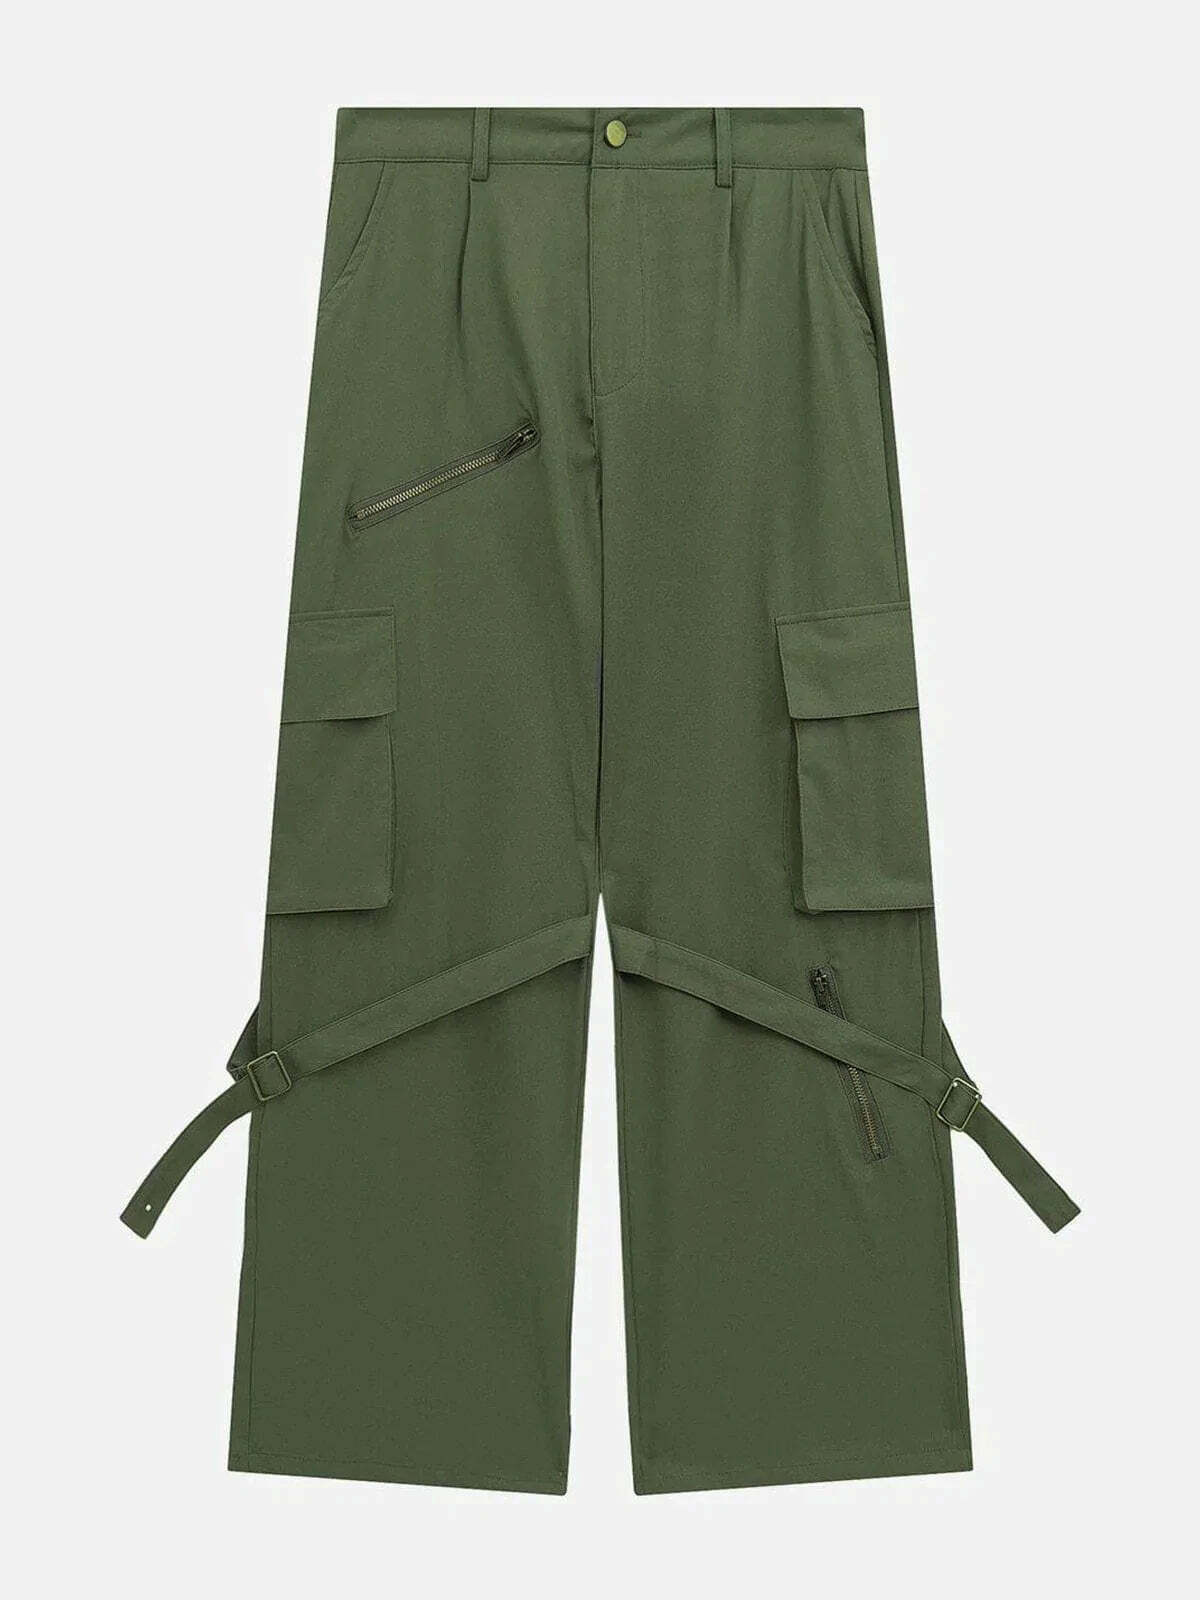 zipup cargo pants edgy streetwear essential 2494